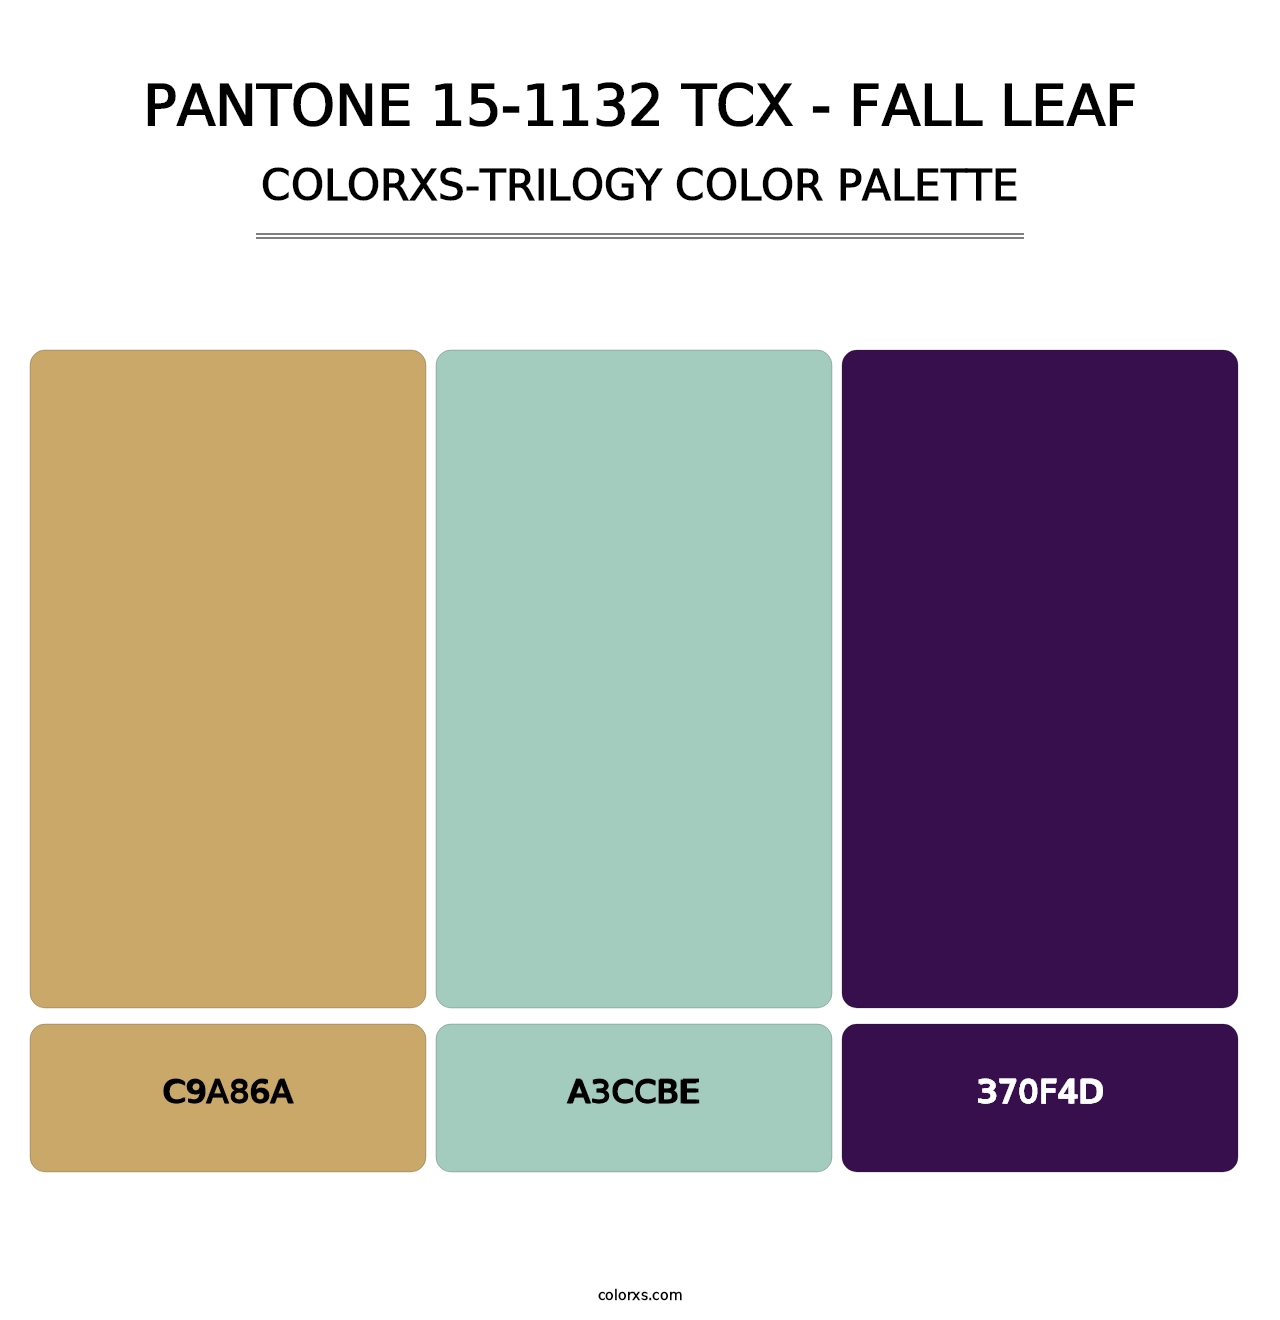 PANTONE 15-1132 TCX - Fall Leaf - Colorxs Trilogy Palette